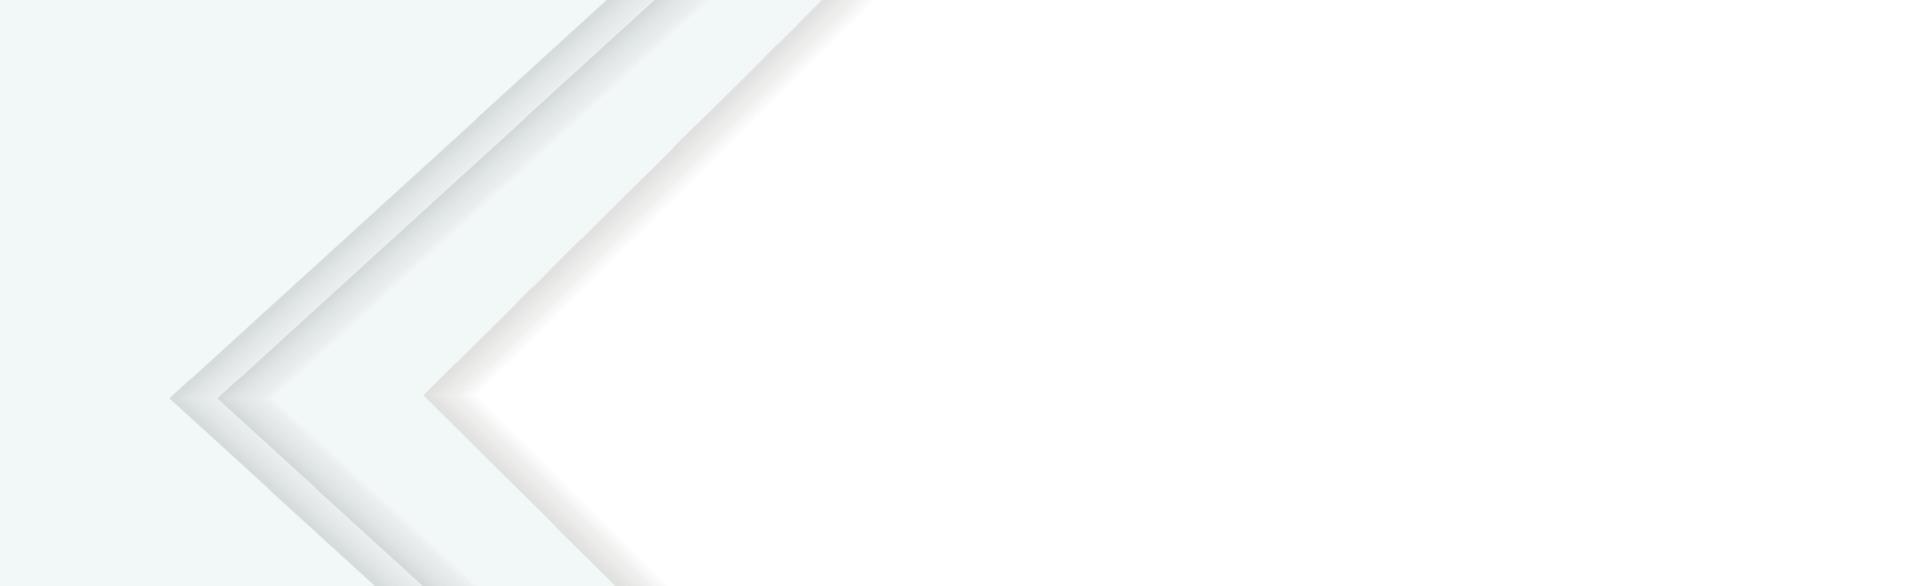 fond panoramique de vecteur blanc avec des lignes